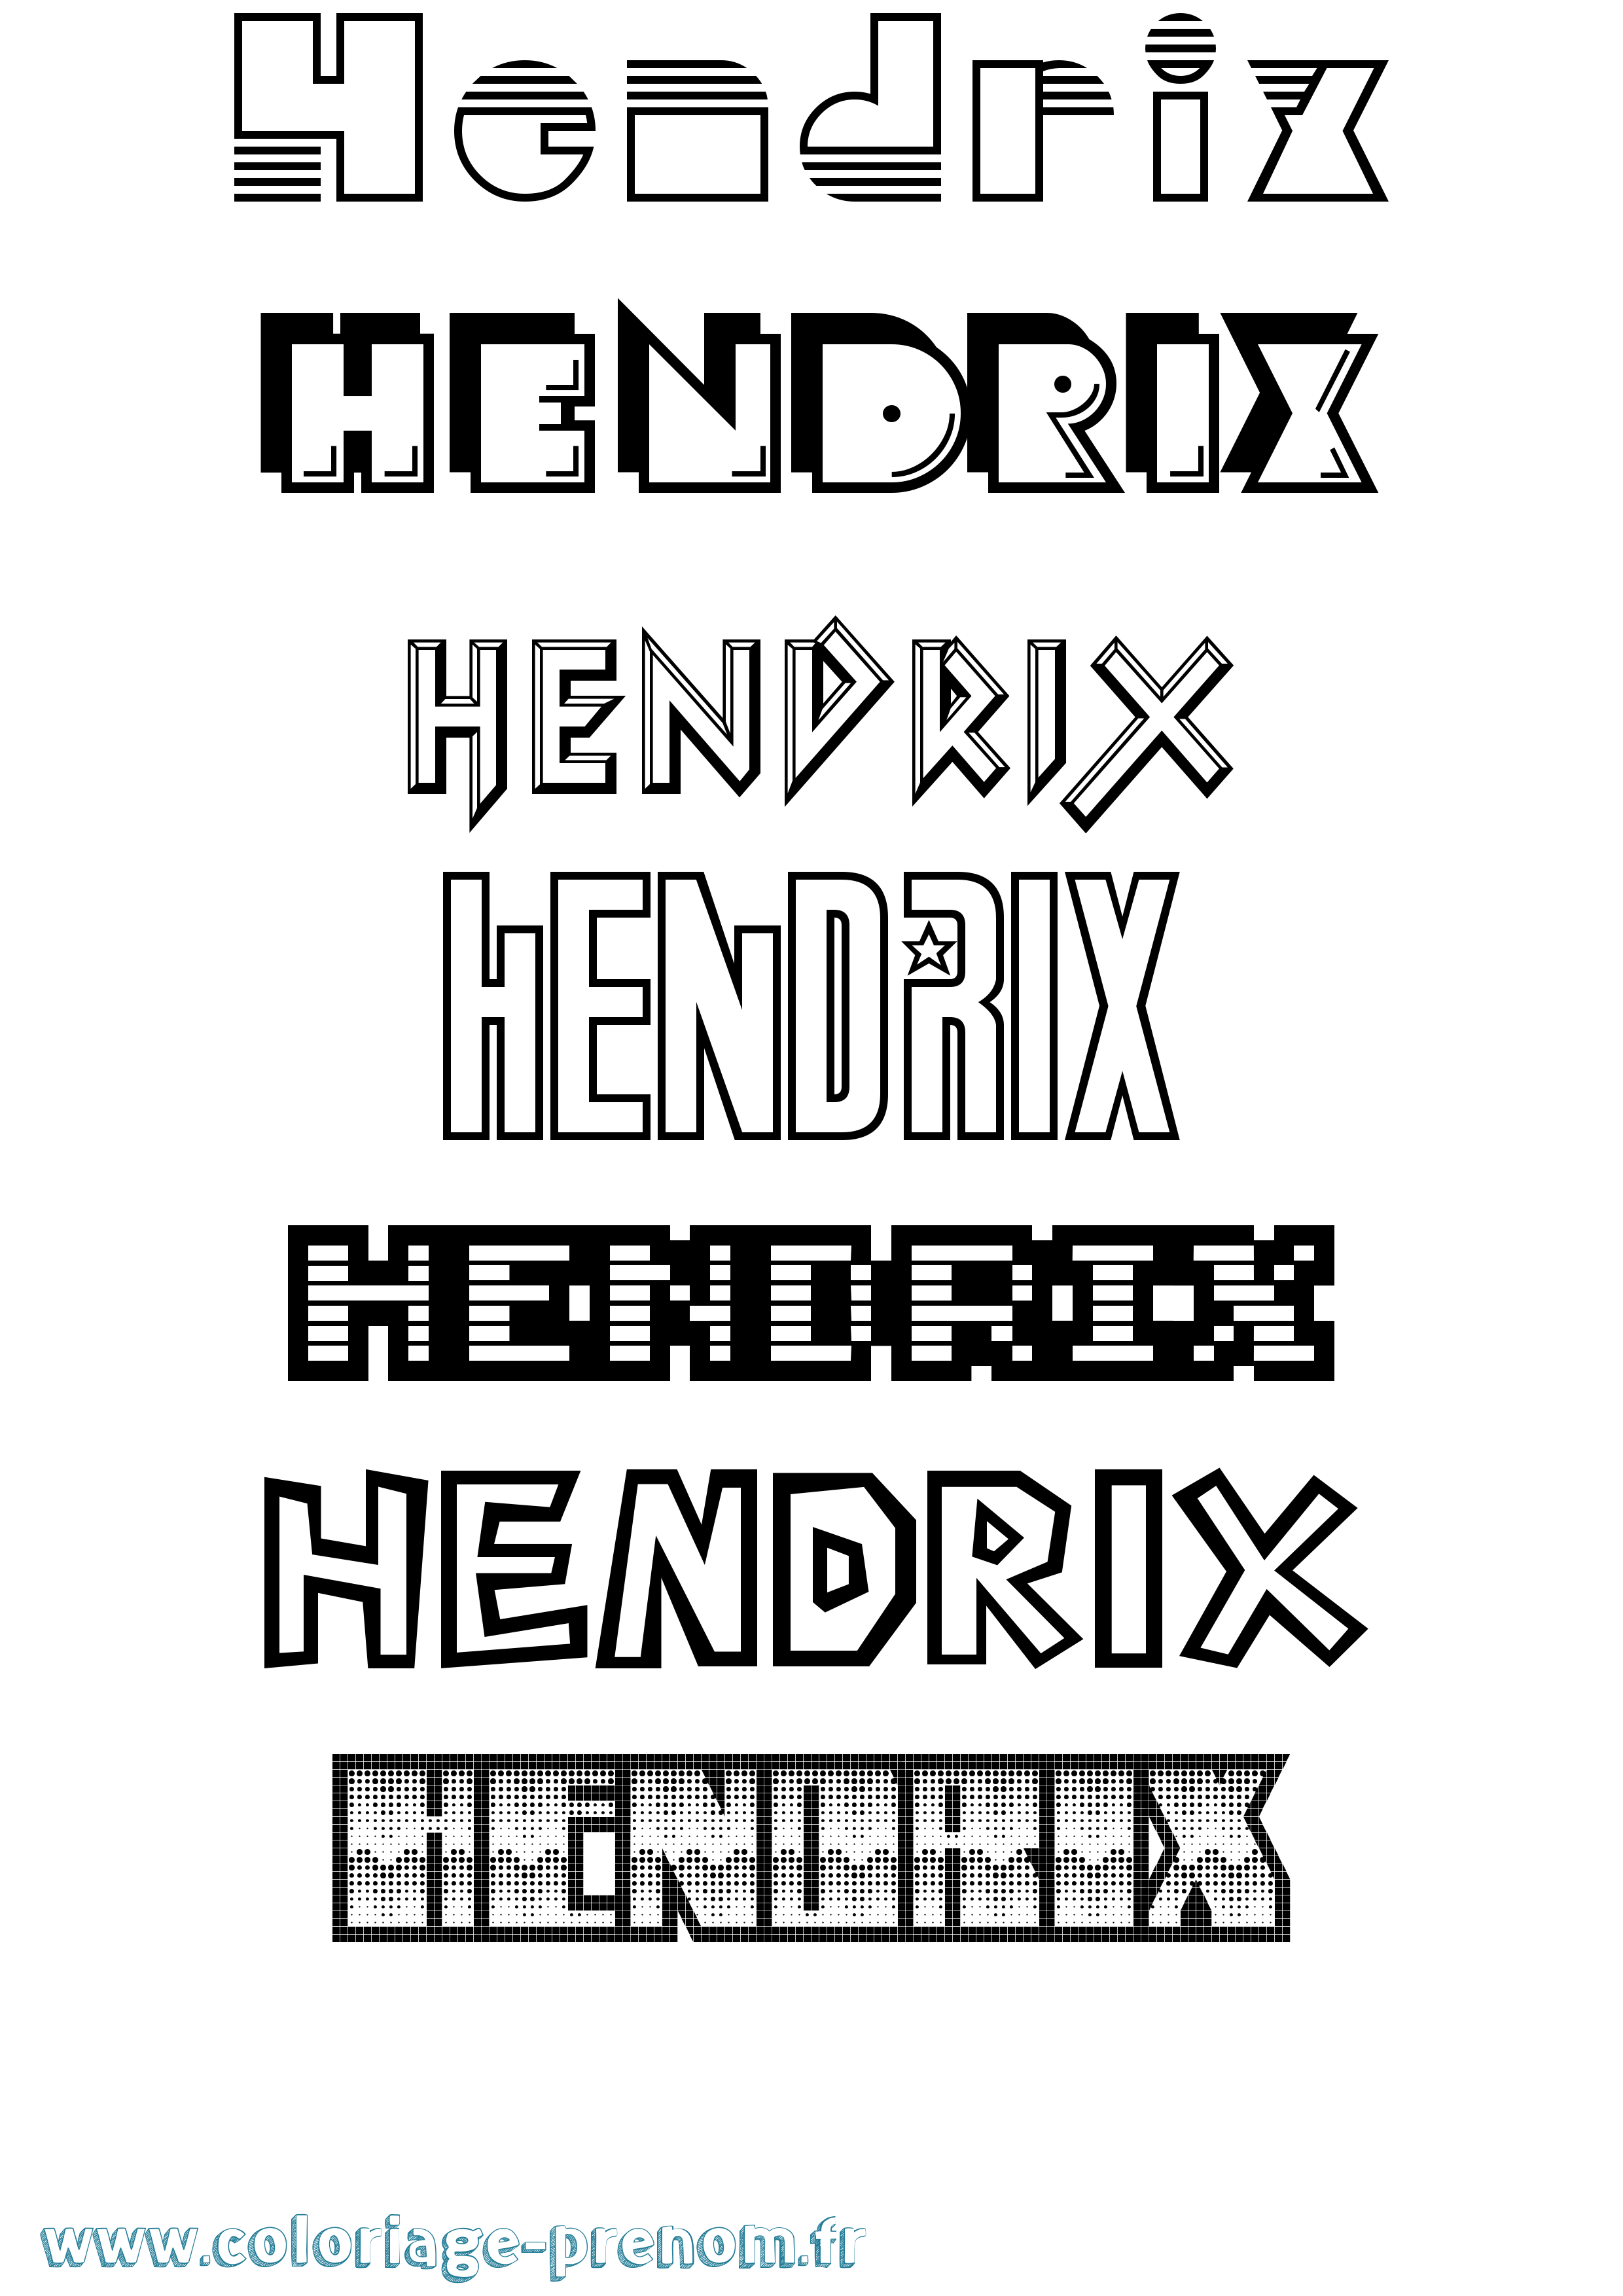 Coloriage prénom Hendrix Jeux Vidéos